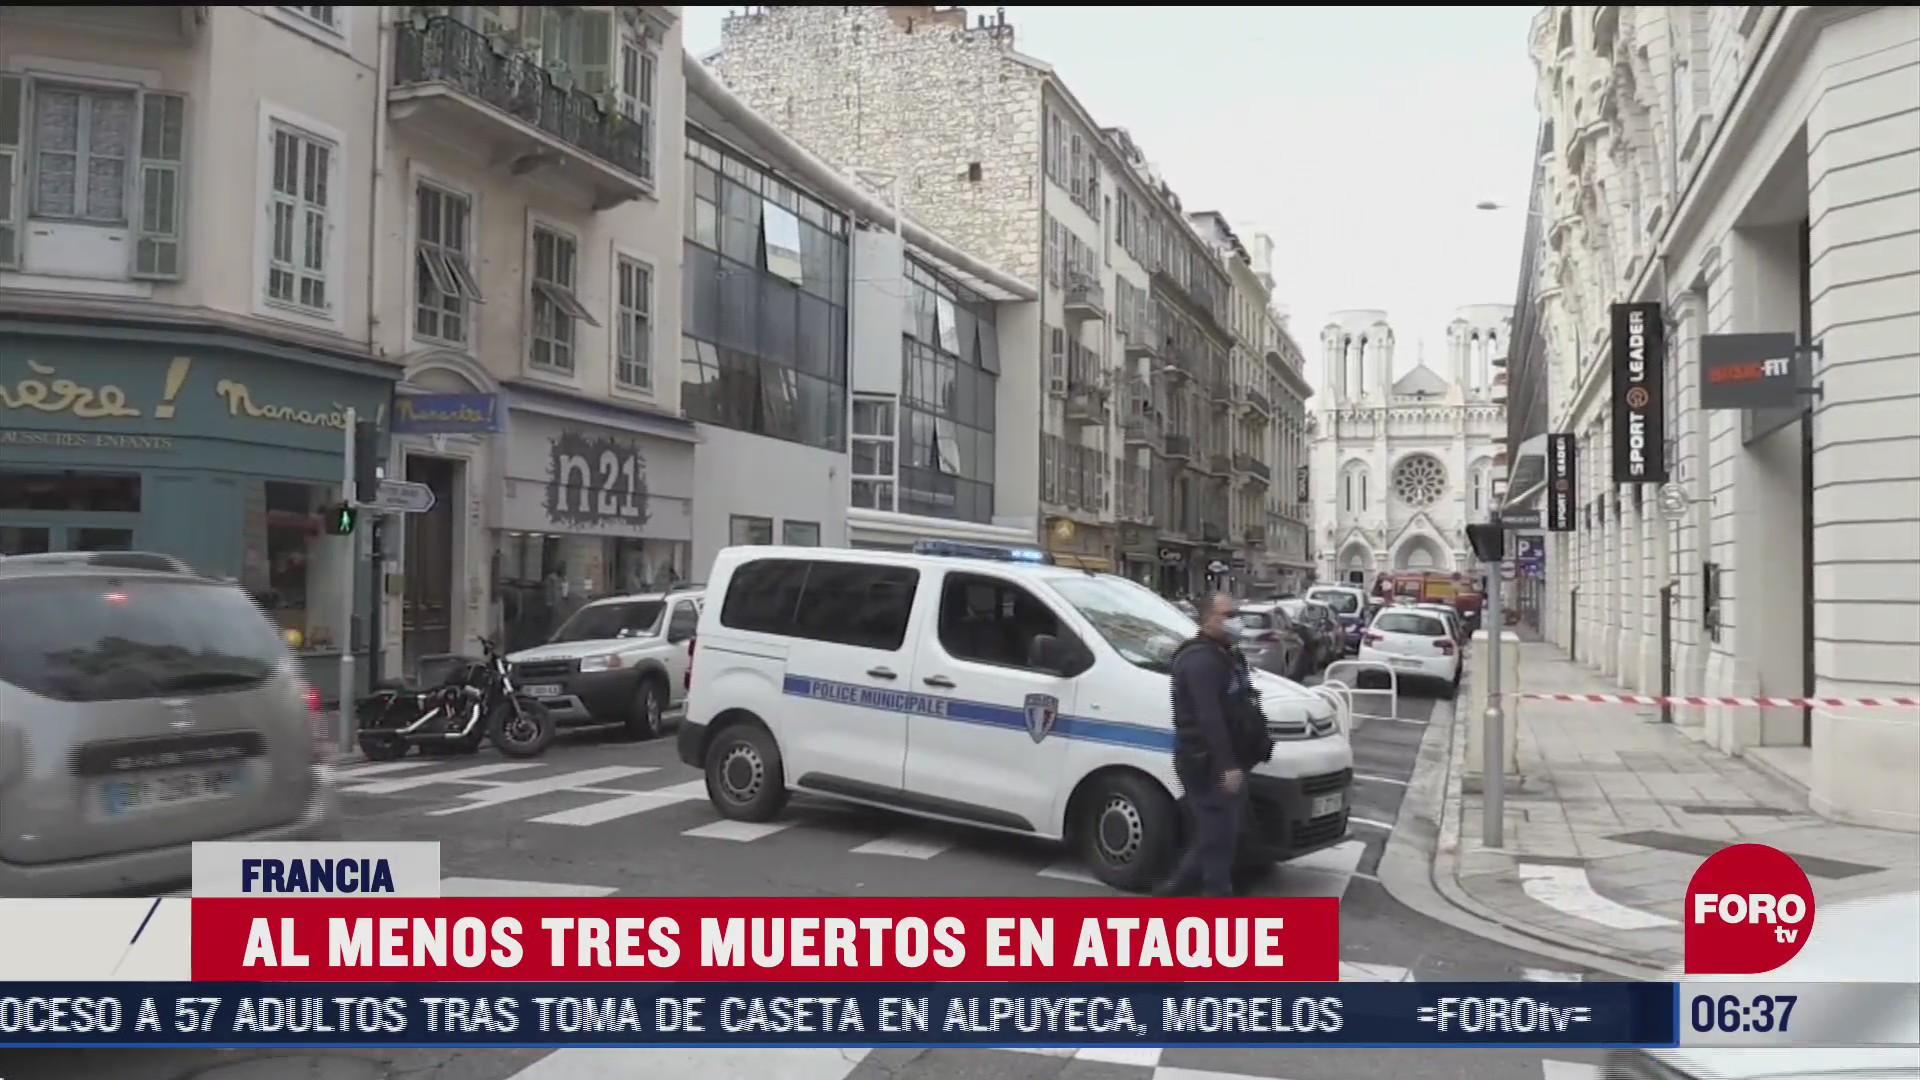 terrorismo vuelve a poner en alarma a francia tras ataque en niza